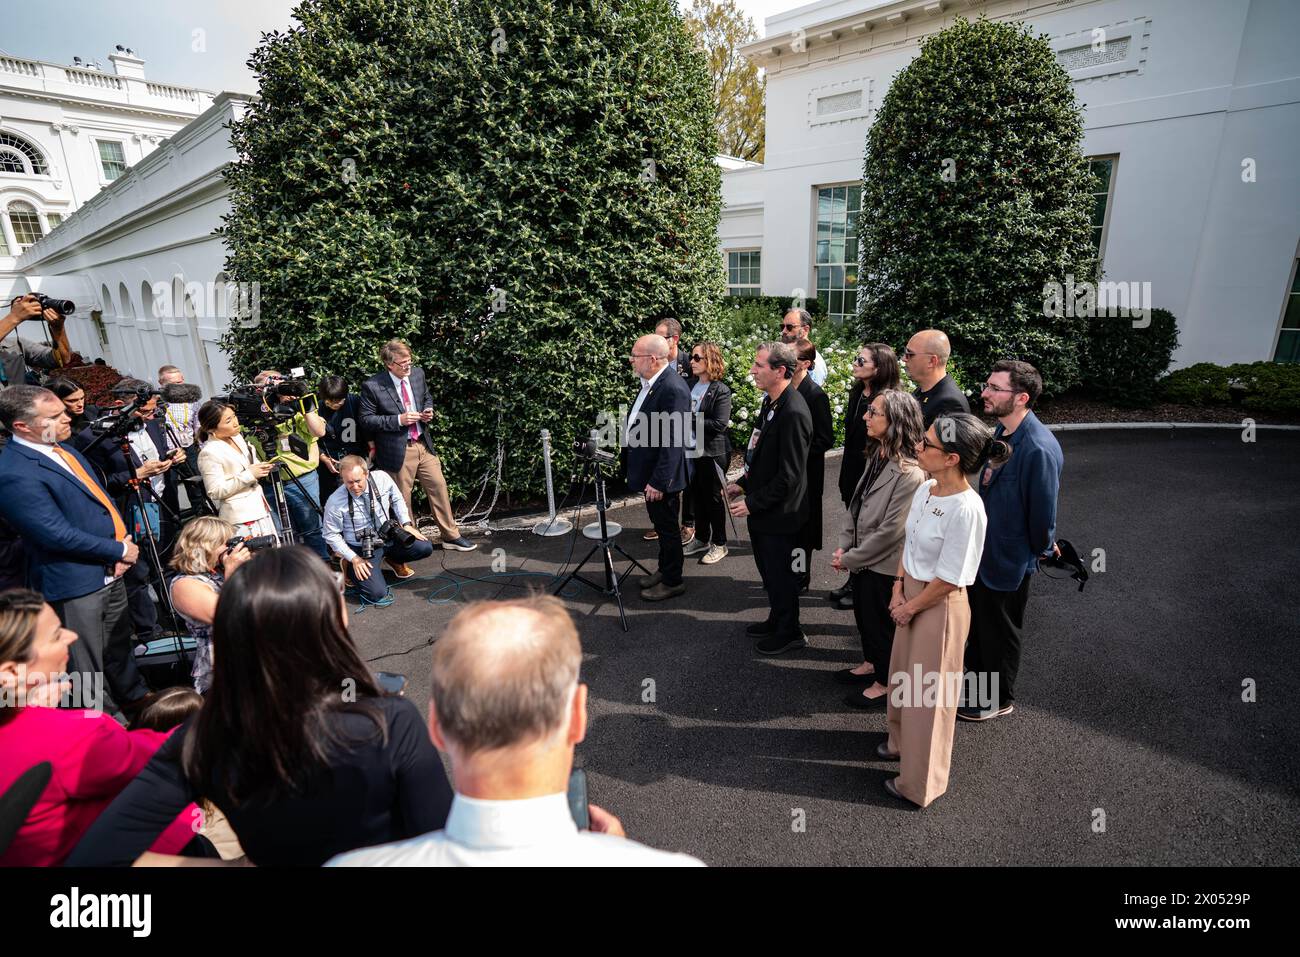 Am 9. April hatten 10 Familienmitglieder der Geisel ein Treffen mit der Vizepräsidentin Kamala Harris im Weißen Haus, nachdem sie zum Pfahl kamen Stockfoto